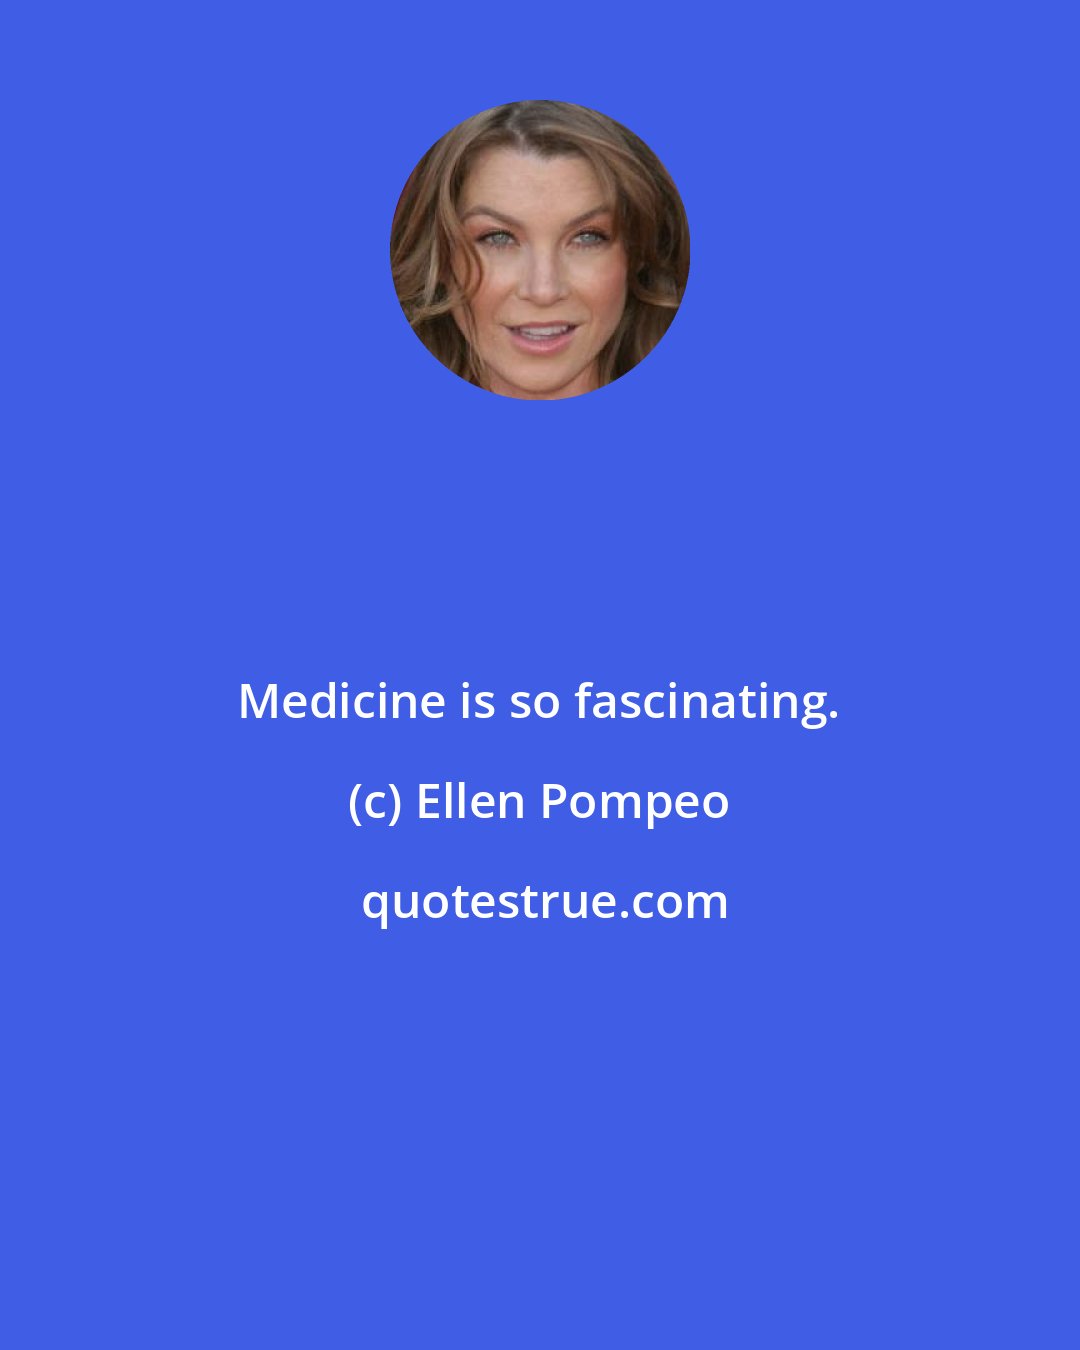 Ellen Pompeo: Medicine is so fascinating.